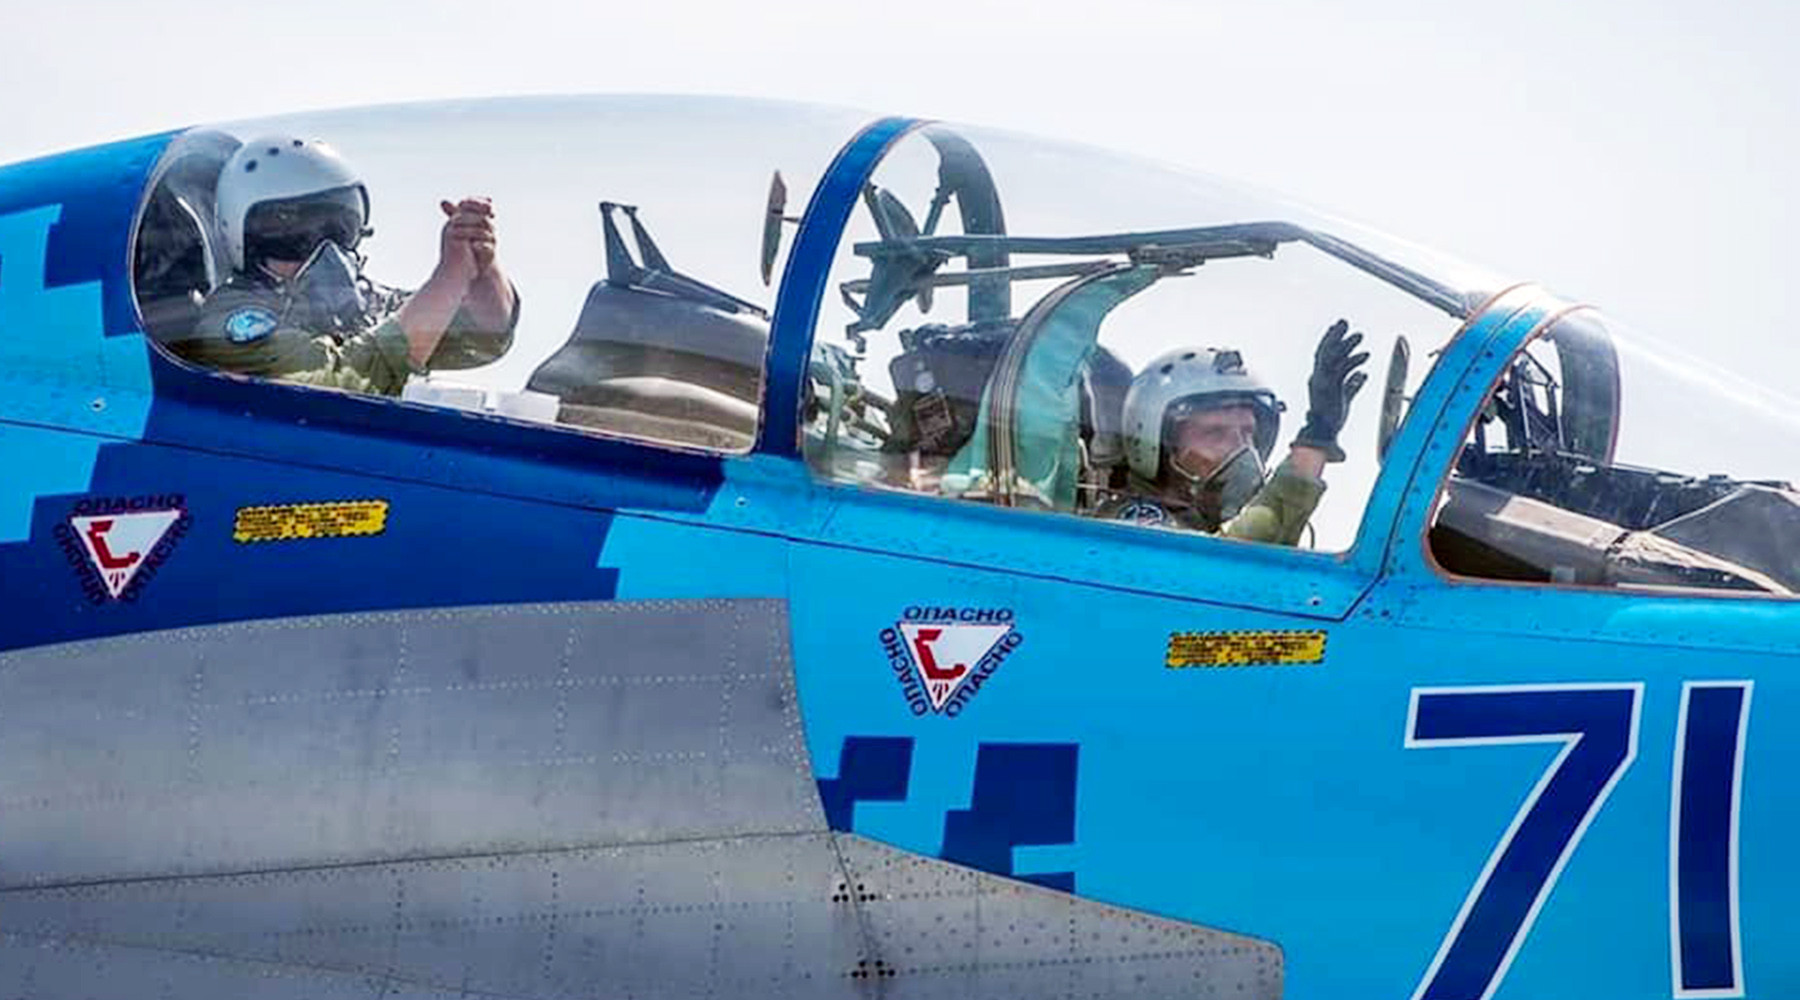 Небезвозмездная помощь: сможет ли Украина обновить ВВС за счёт американских самолётов